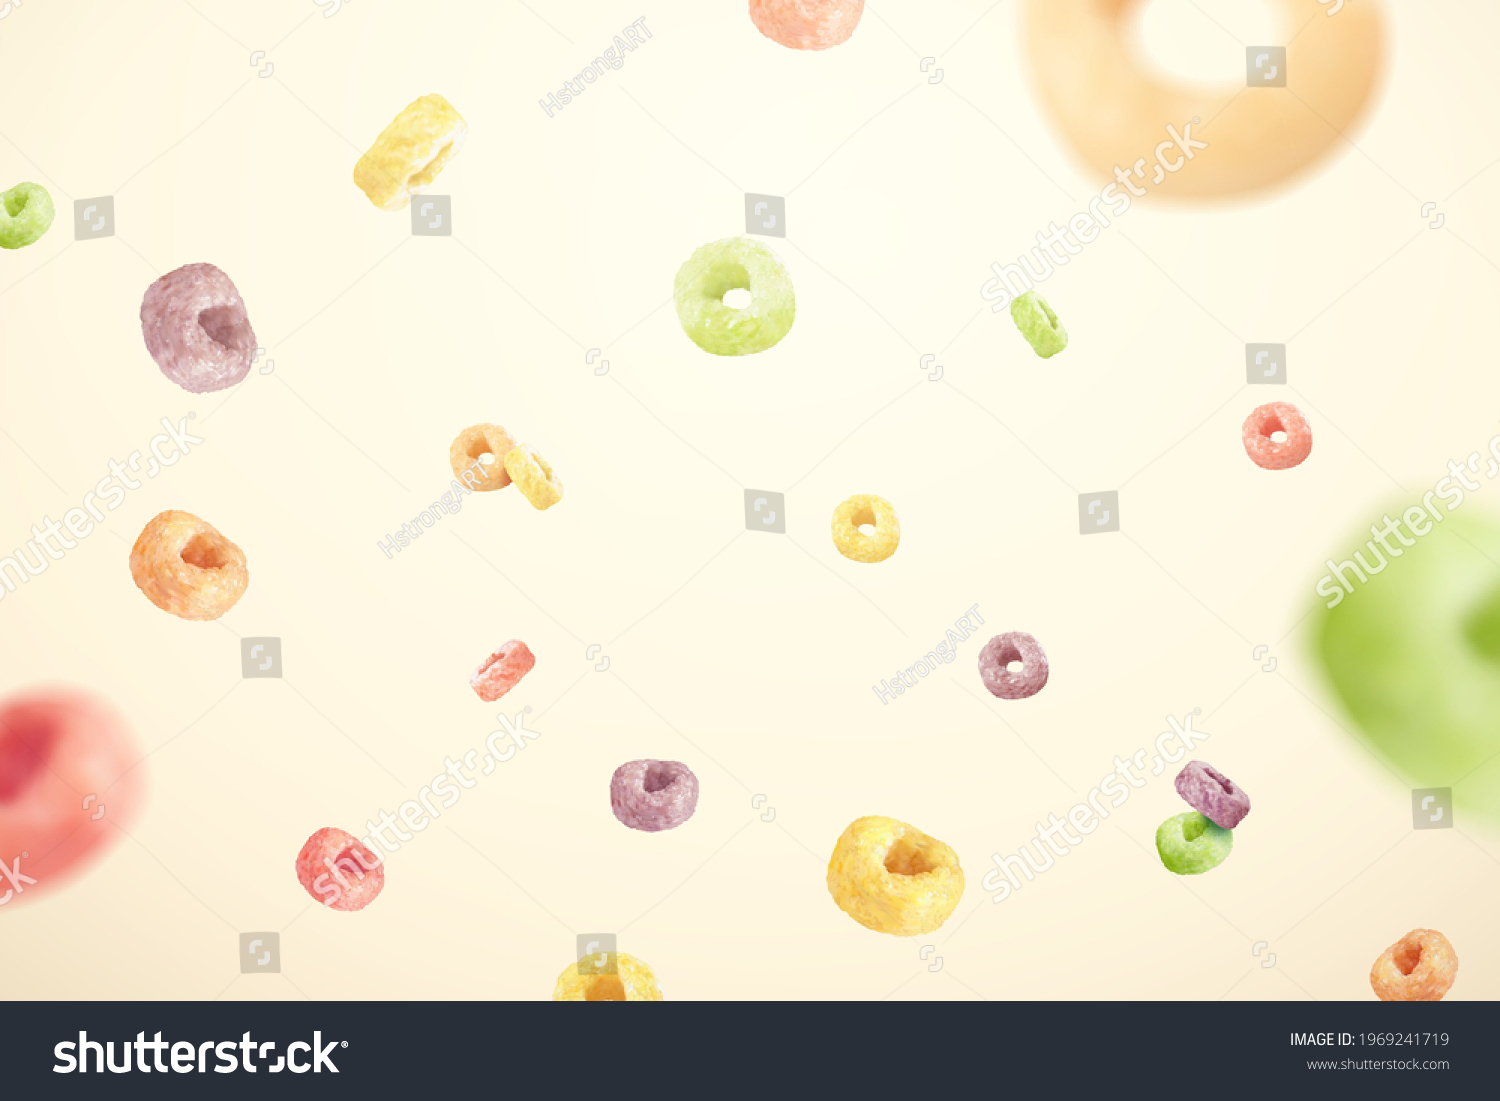 SVG of Design element of colorful ring cereals in 3D illustration. Cereal rings of fresh fruit flavors flying on beige color background. svg